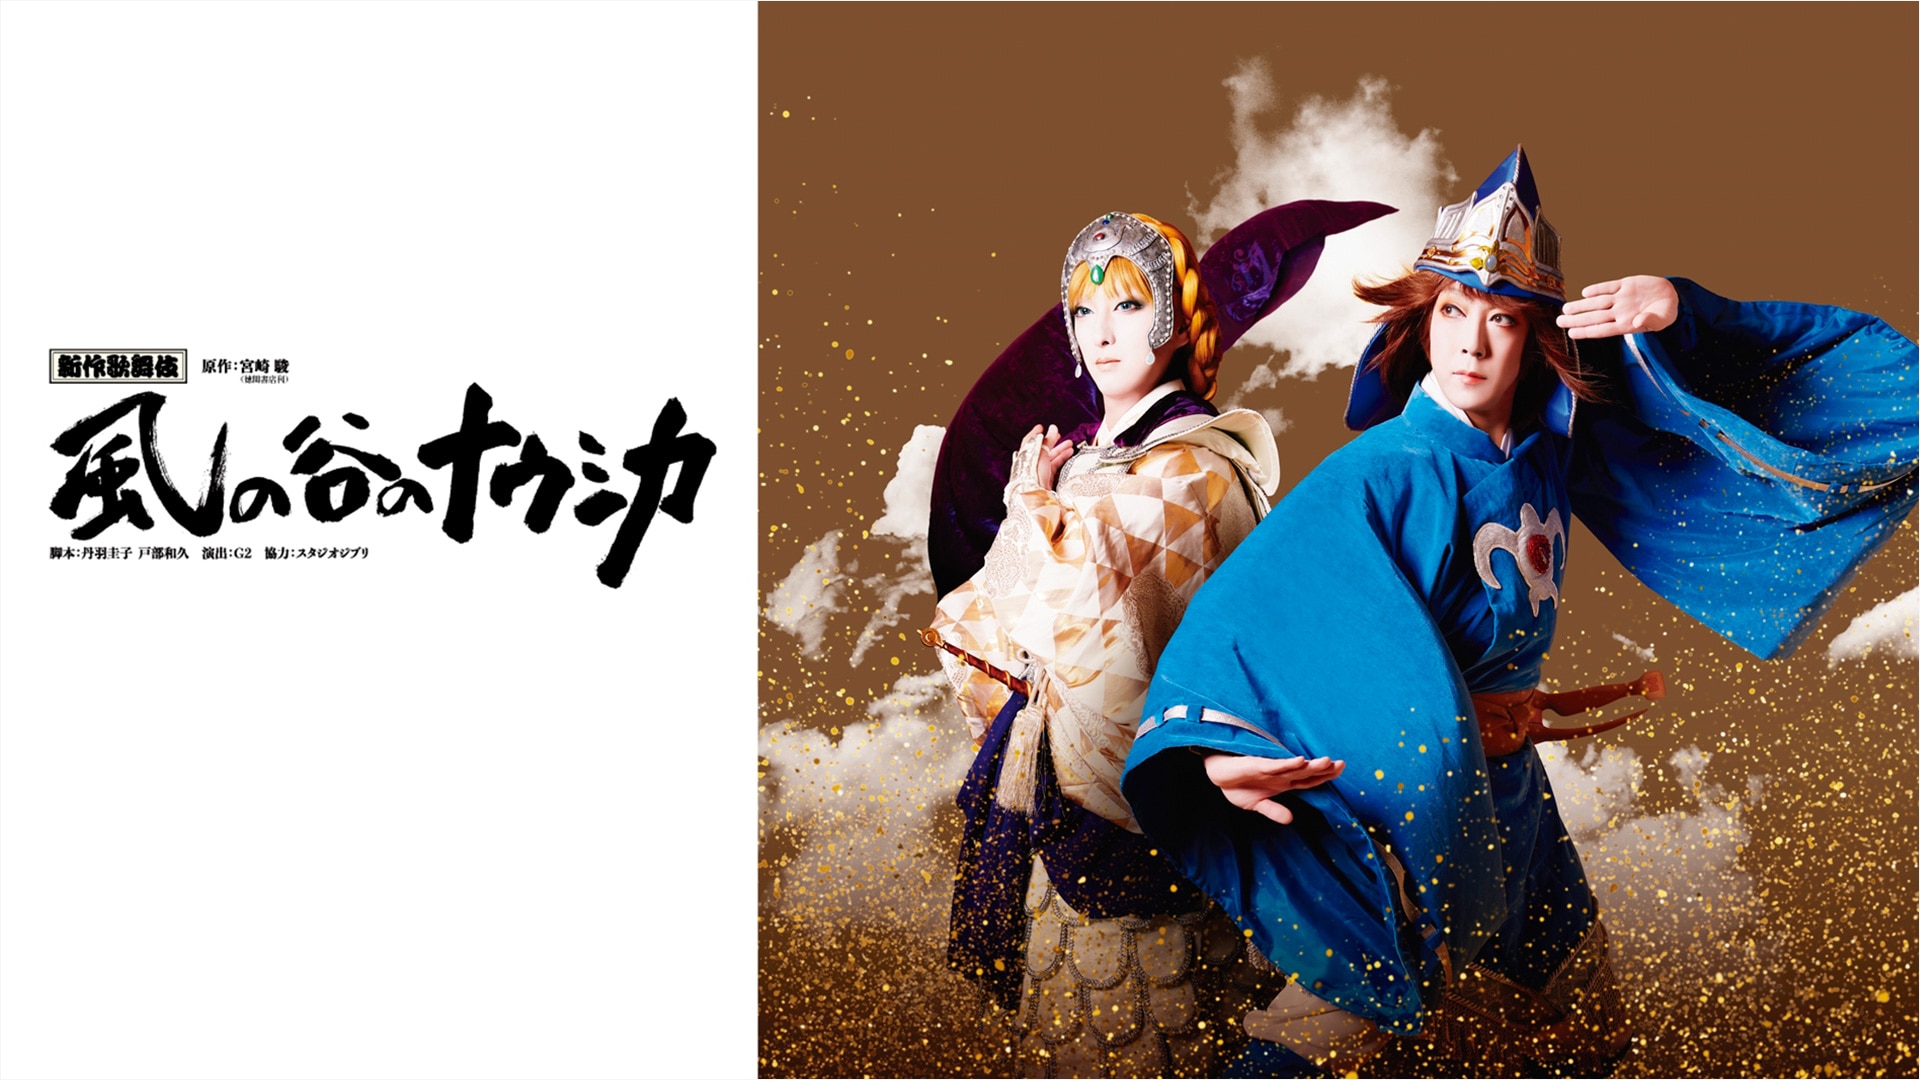 「風の谷のナウシカ」の世界と“歌舞伎”の世界の絶妙な融合